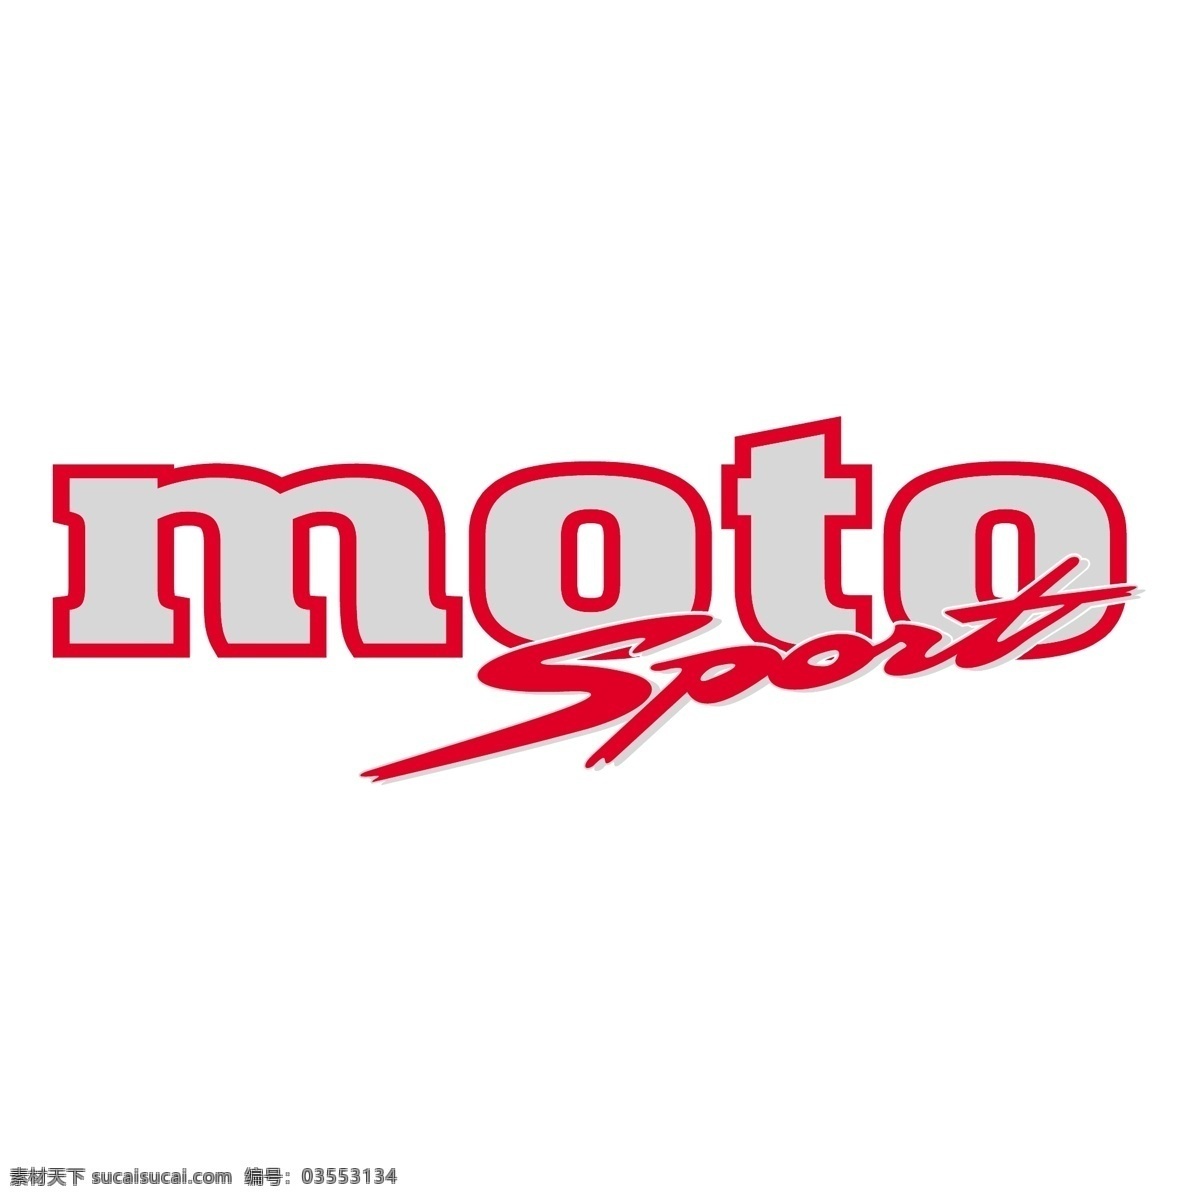 摩托 摩托罗拉 运动 摩托运动 免费 矢量 该运动的标志 标志 赛车 摩托运动赛车 标志设计 logo 摩托运动自由 矢量图 建筑家居